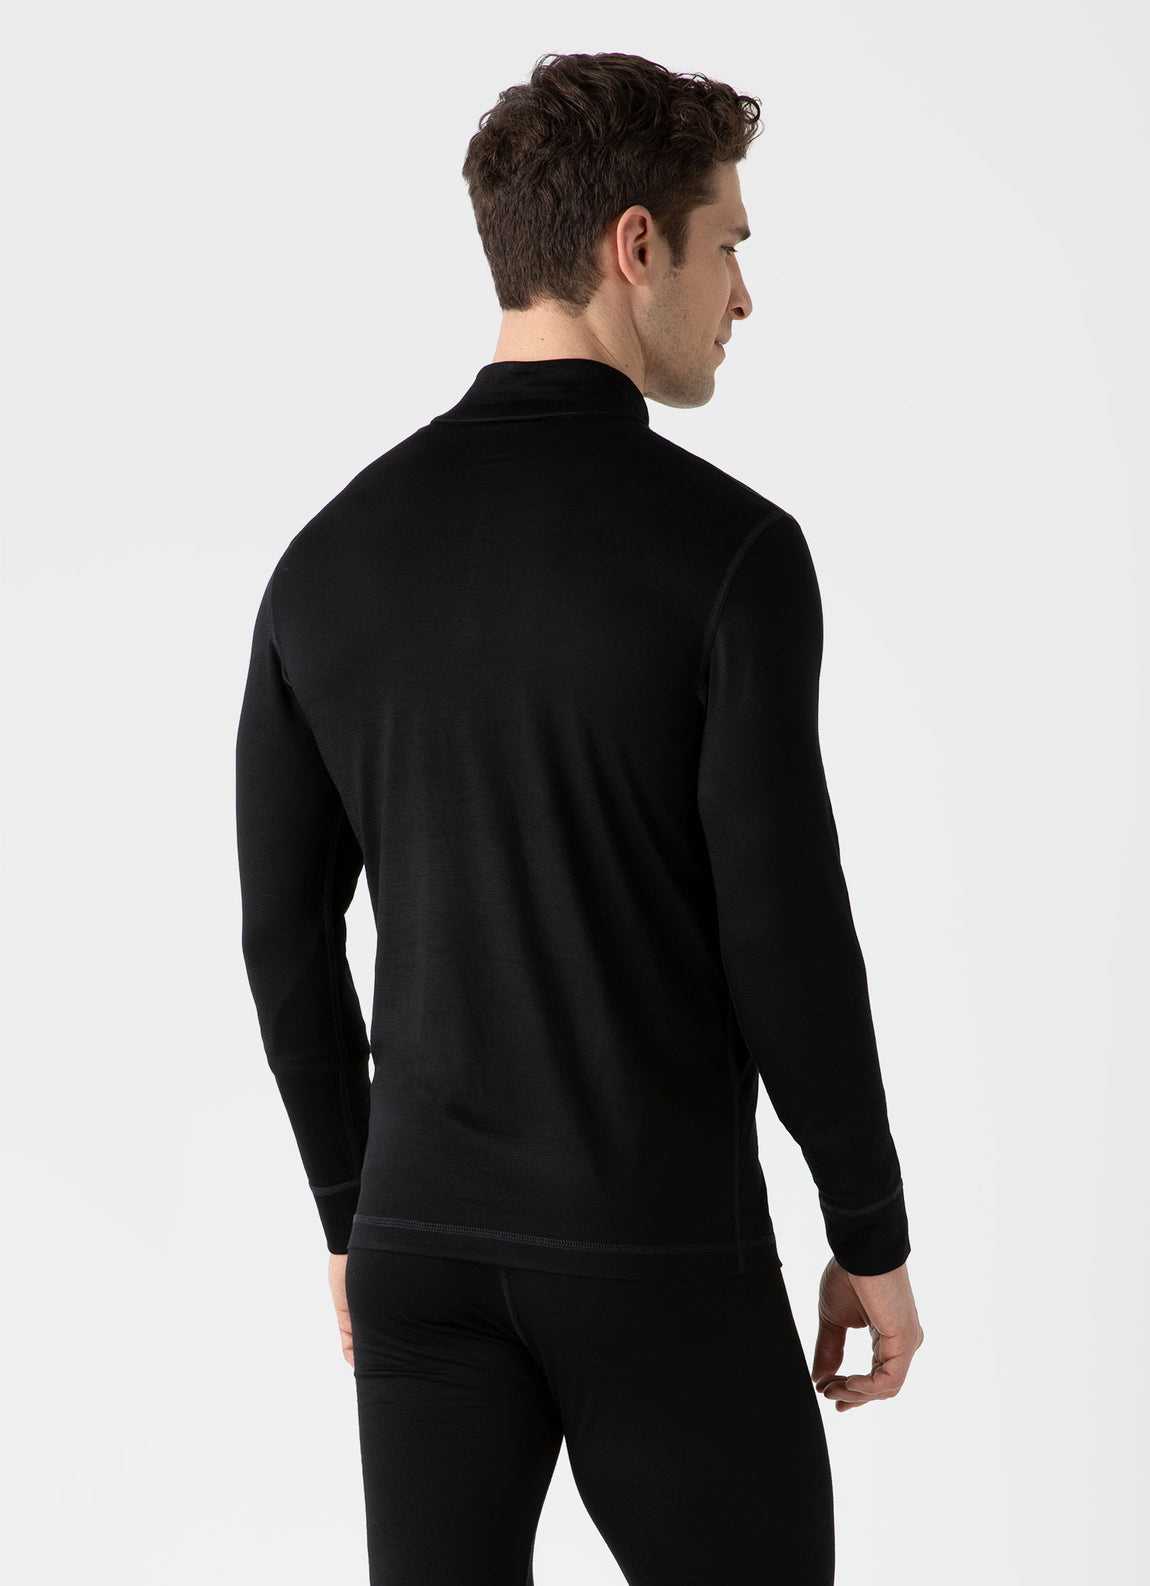 Men's Active Merino Half Zip Top in Black